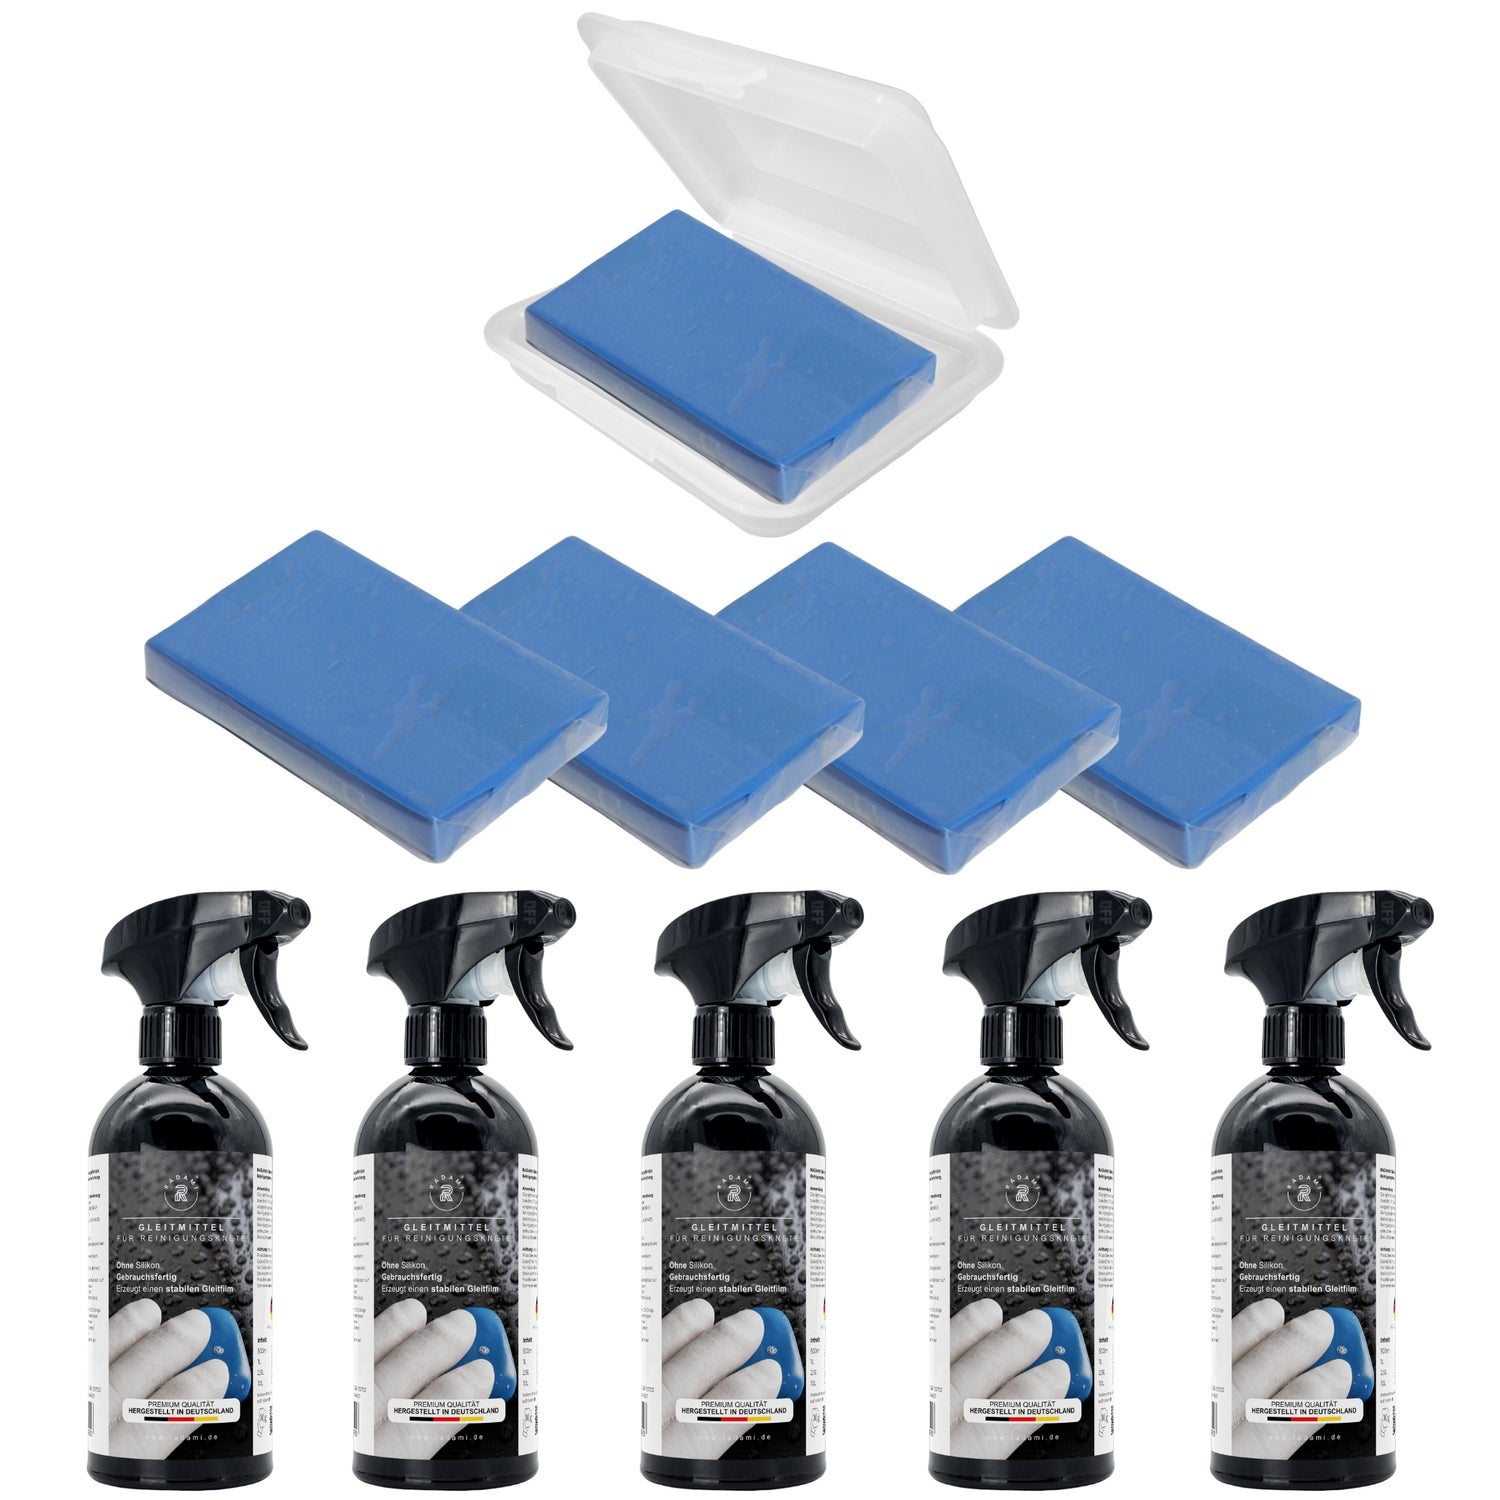 Autoknete Reinigungsknete 5x 500ml Gleitmittel / 5x100g Knete Blau mittel Rostentferner Insektenentferner Lackreiniger